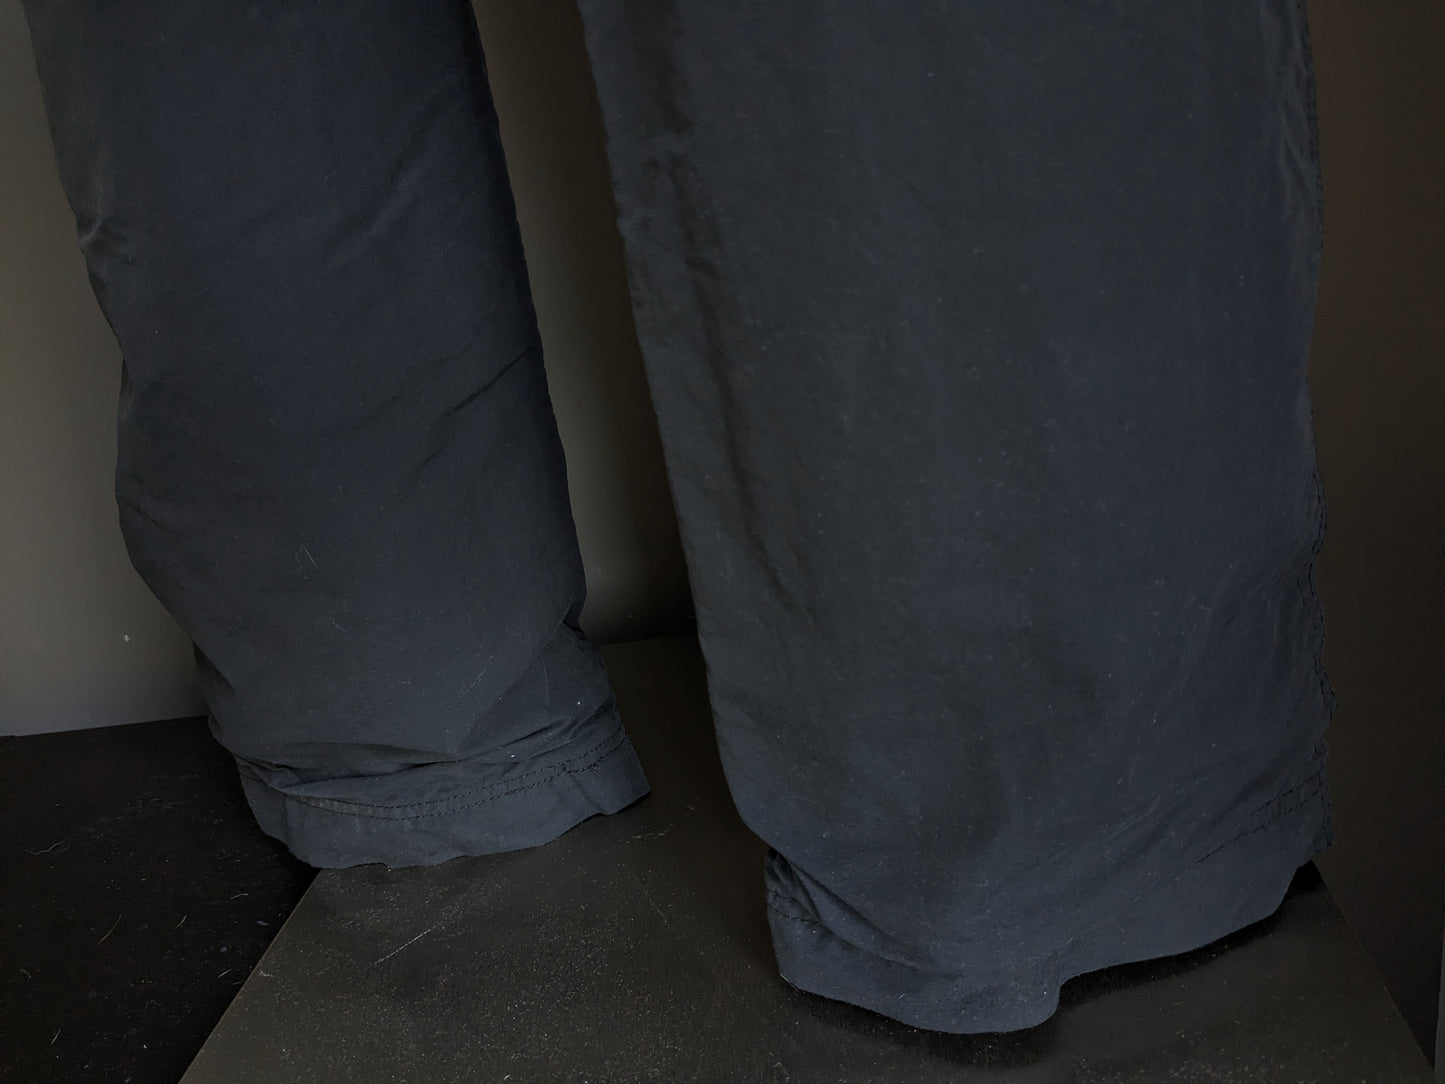 Pantaloni da esterno Tenson. Fodera morbida e calda. Di colore nero. Taglia 54/L.